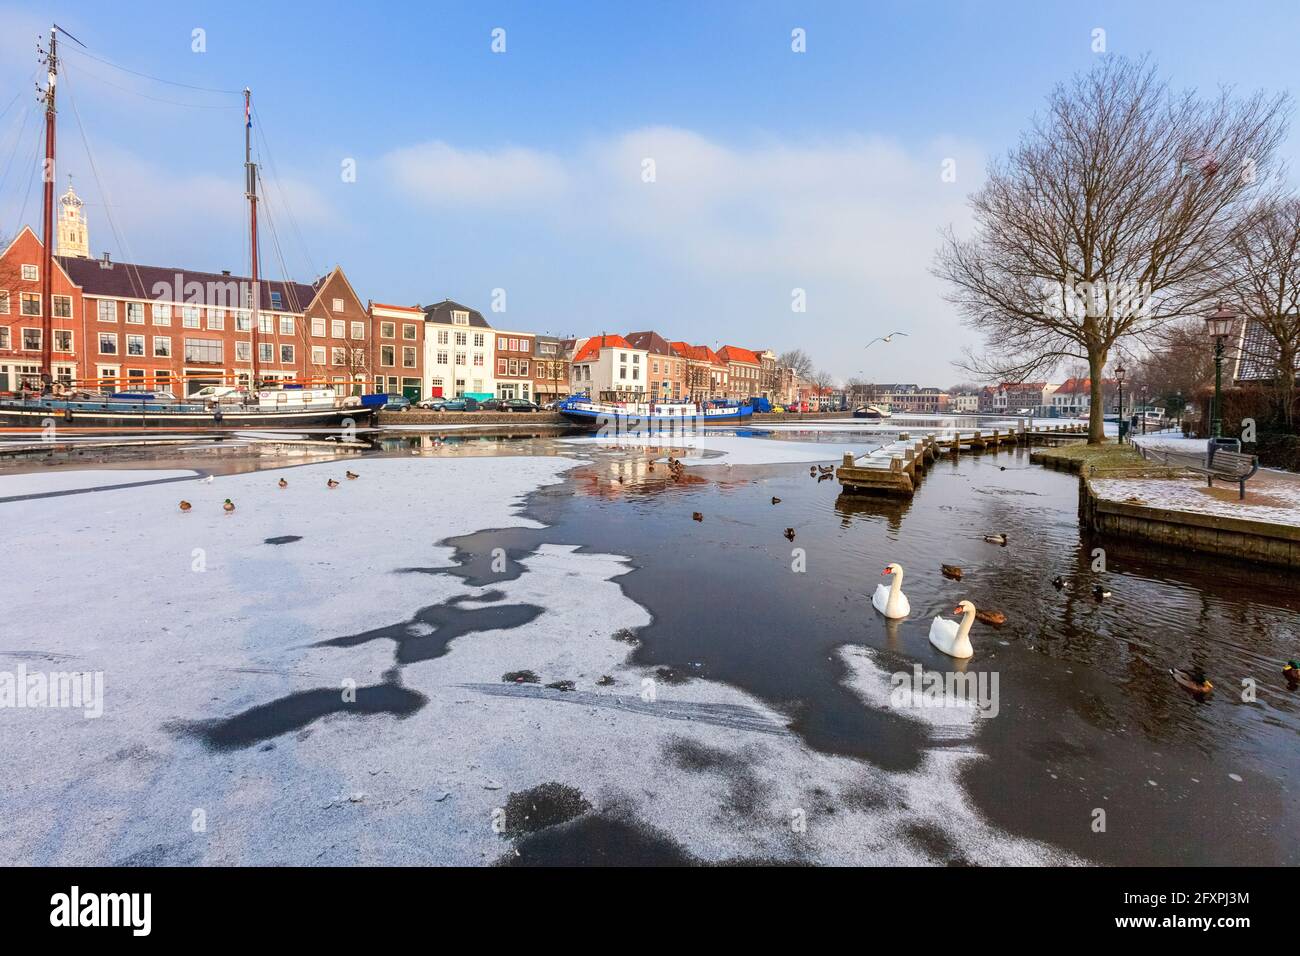 Weiße Schwäne im gefrorenen Wasser des Spaarne-Flusskanals, Haarlem, Amsterdam, Nord-Holland, Niederlande, Europa Stockfoto